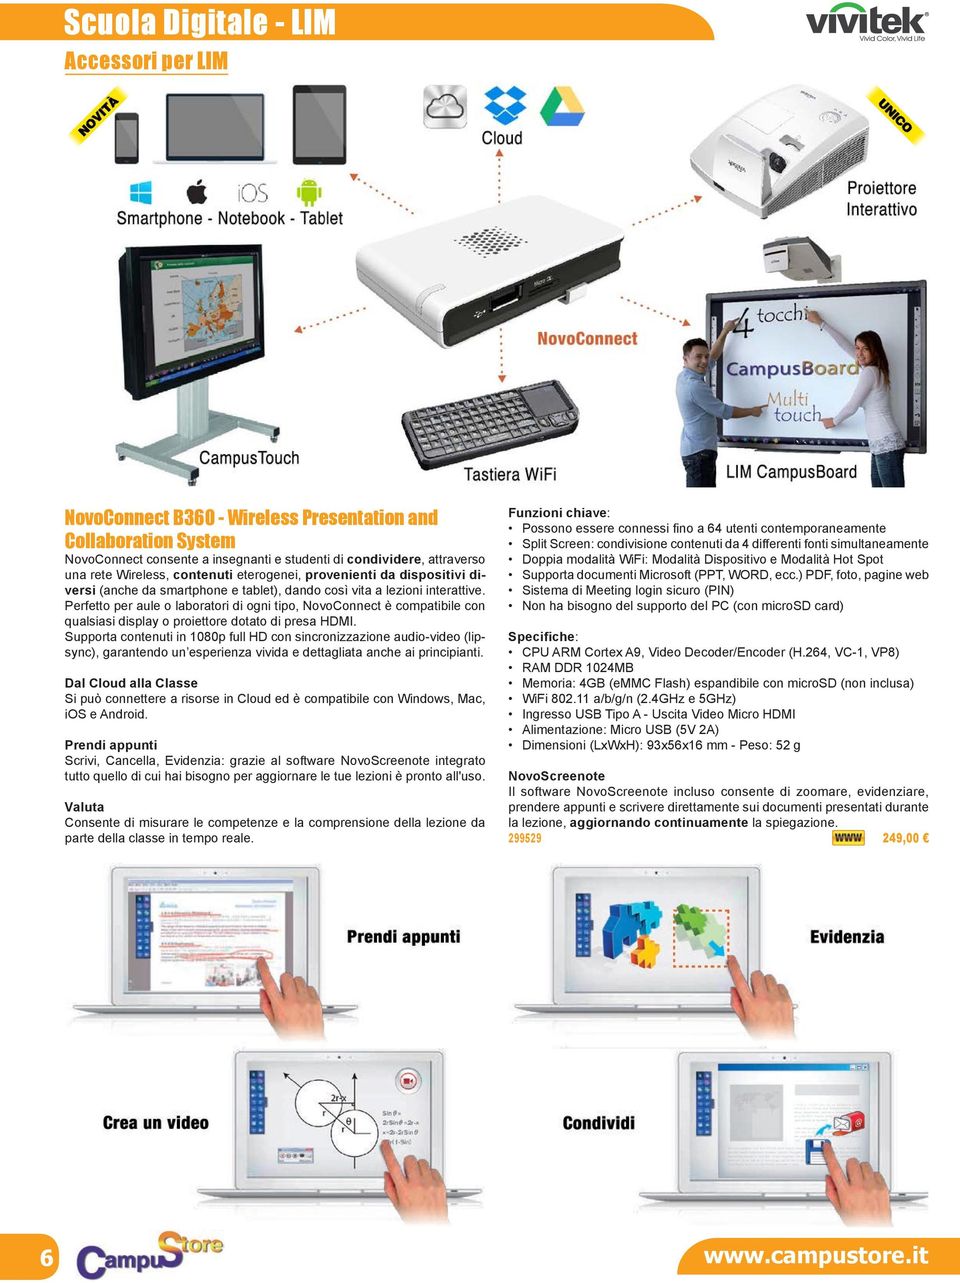 Perfetto per aule o laboratori di ogni tipo, NovoConnect è compatibile con qualsiasi display o proiettore dotato di presa HDMI.